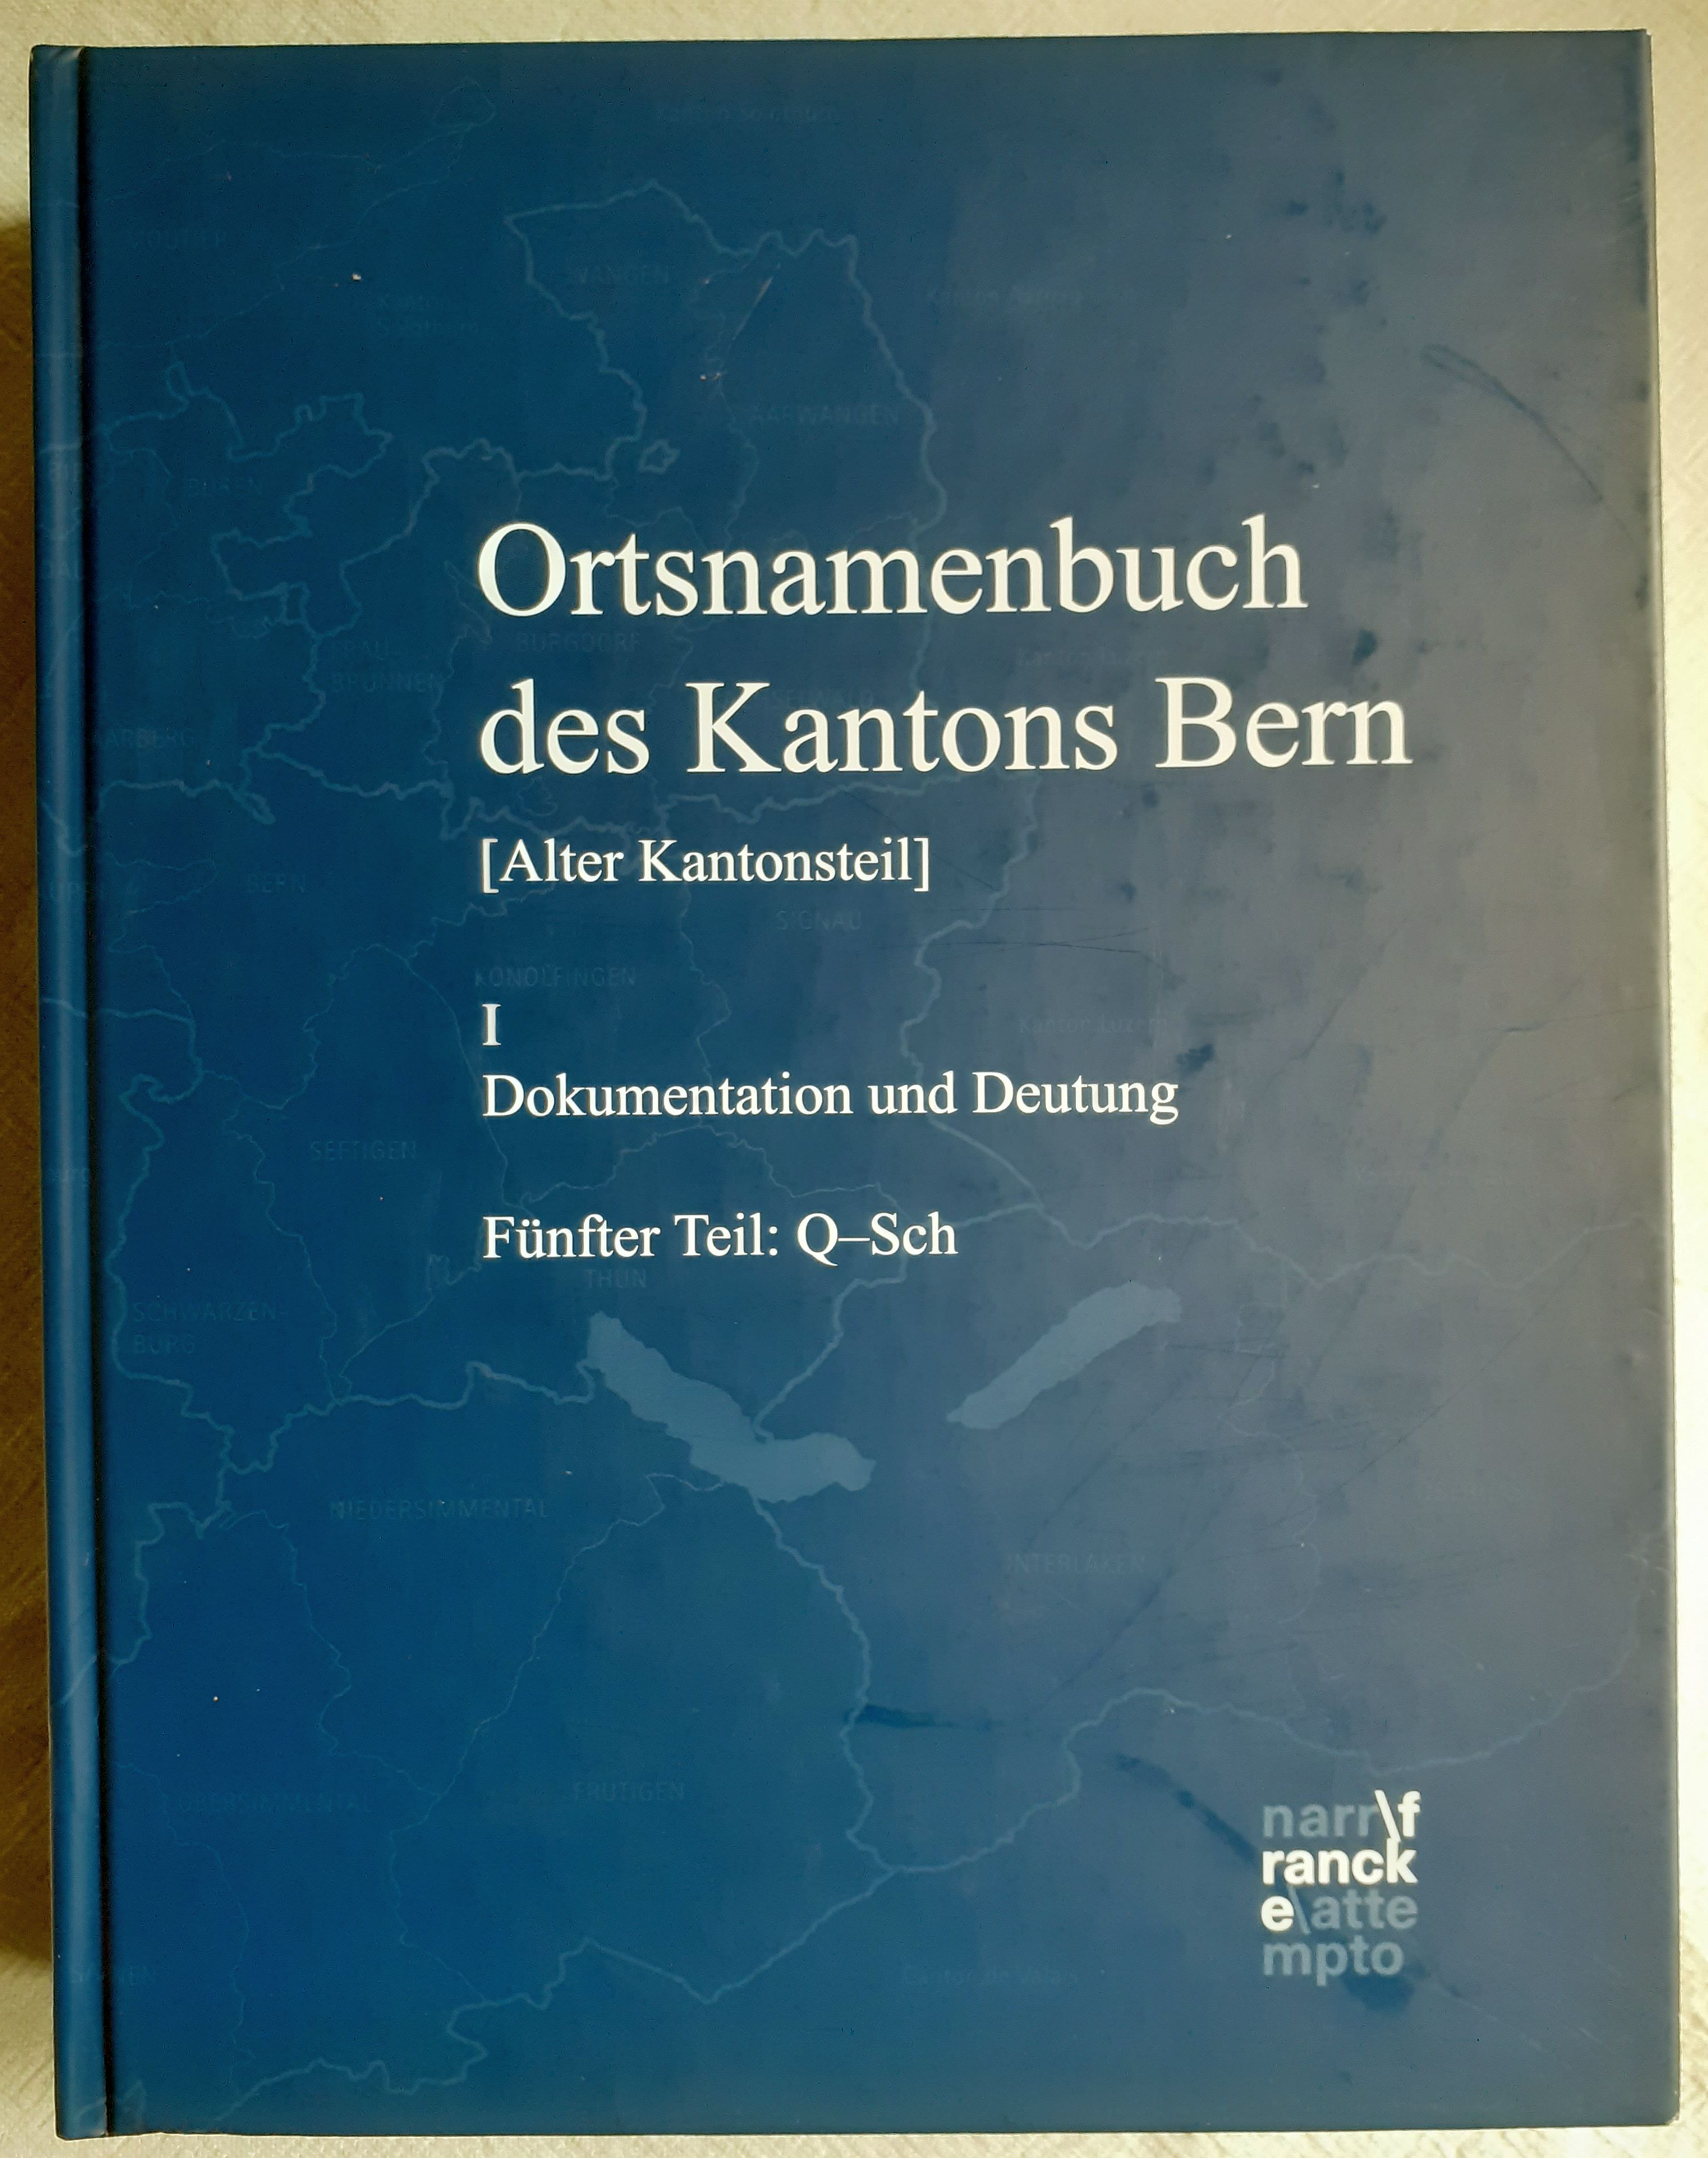 Ortsnamenbuch des Kantons Bern ; 1: Dokumentation und Deutung ; 5. Teil., Q-Sch - Schneider, Thomas Franz ; Zinsli, Paul ; Glatthard, Peter [Hrsg.]